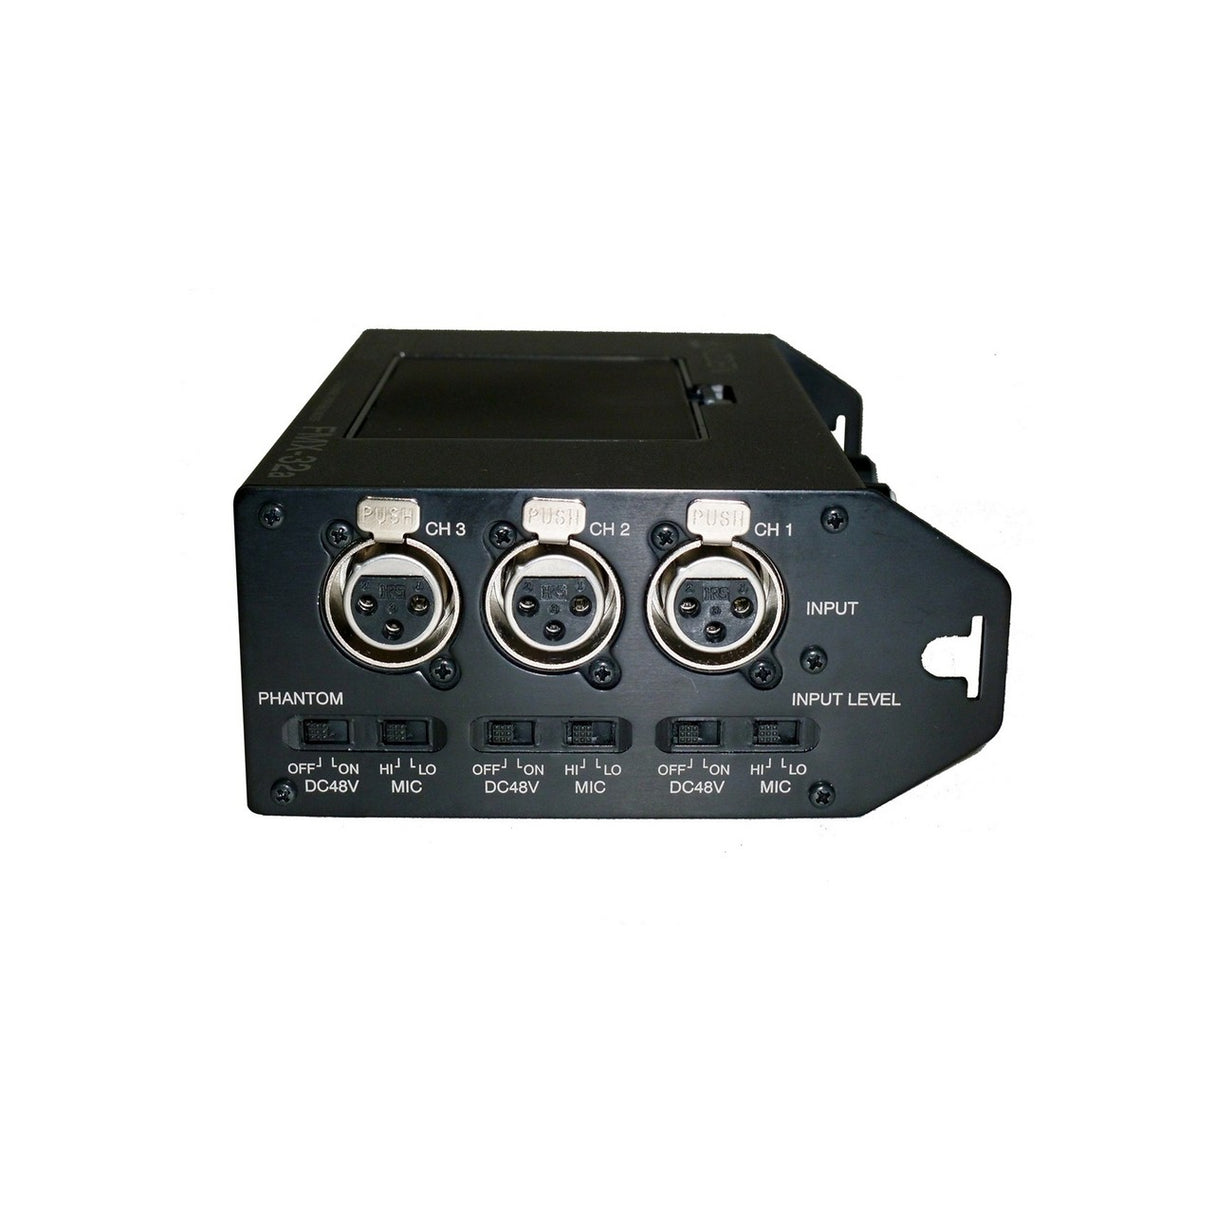 Azden FMX-32a 3 Channel Portable Microphone Mixer